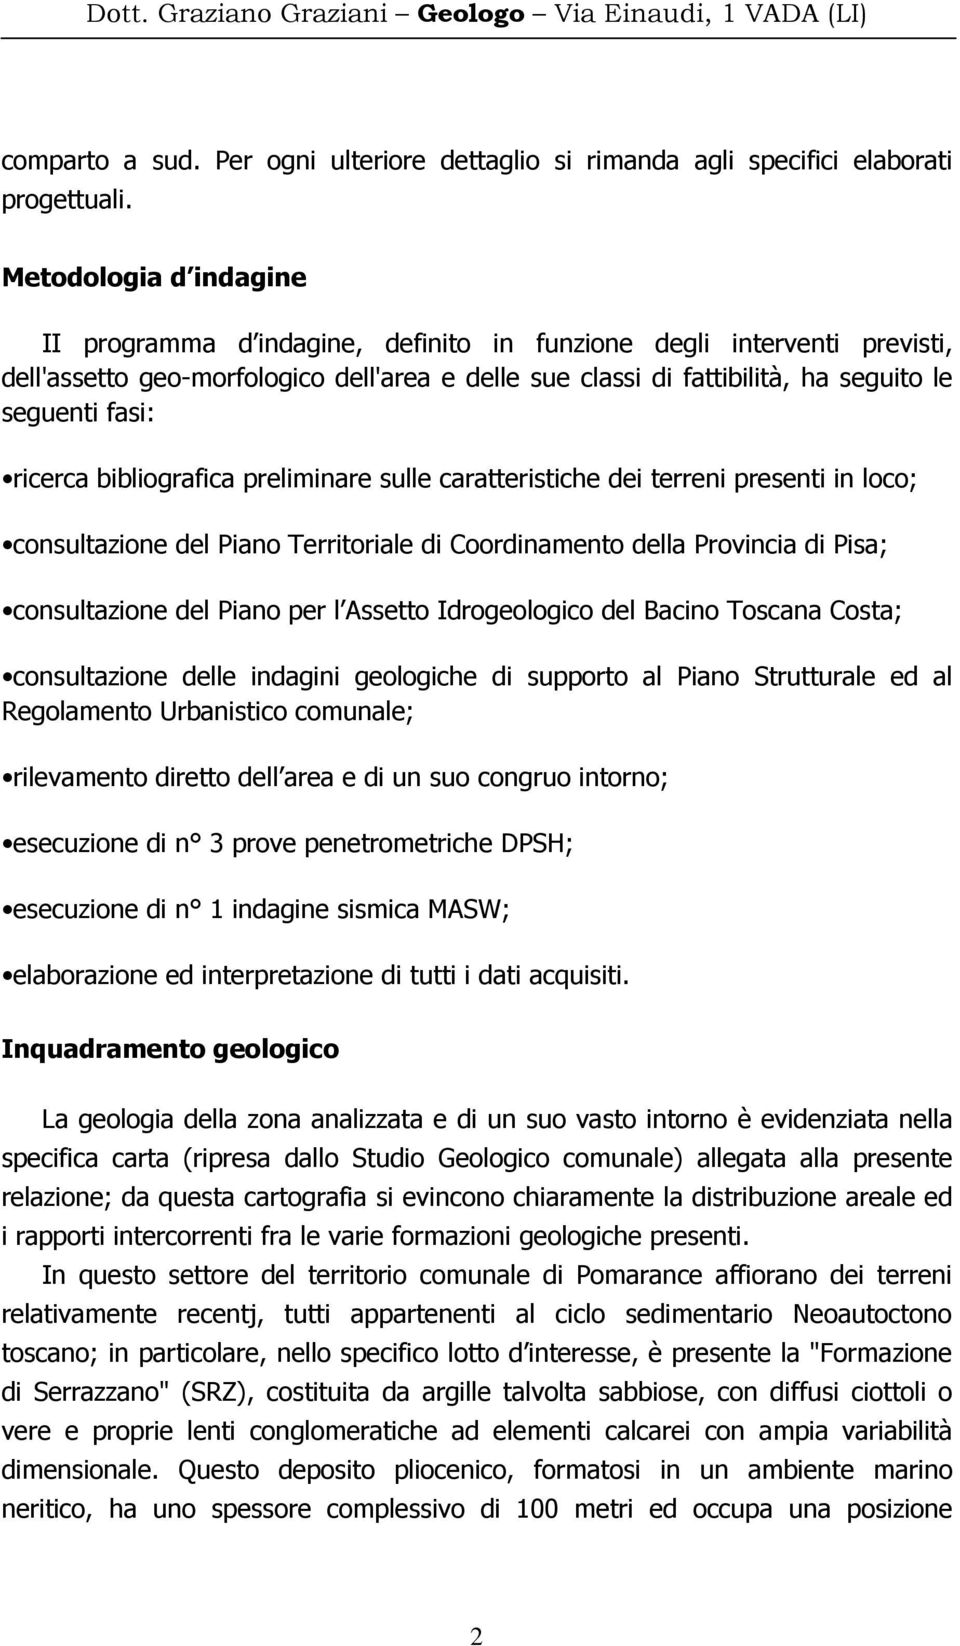 ricerca bibliografica preliminare sulle caratteristiche dei terreni presenti in loco; consultazione del Piano Territoriale di Coordinamento della Provincia di Pisa; consultazione del Piano per l